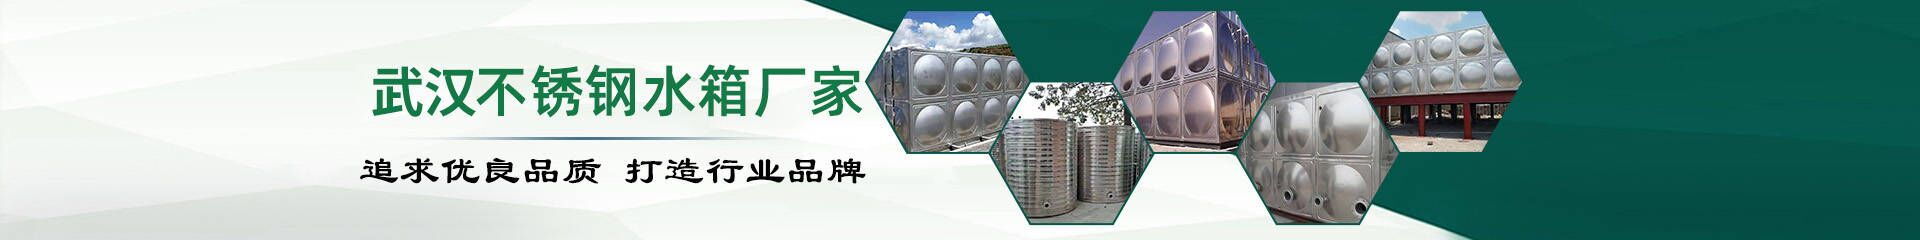 选一款靠谱的水箱, 一定要找武汉不锈钢水箱厂家购买_公司动态_3775a线路检测中心